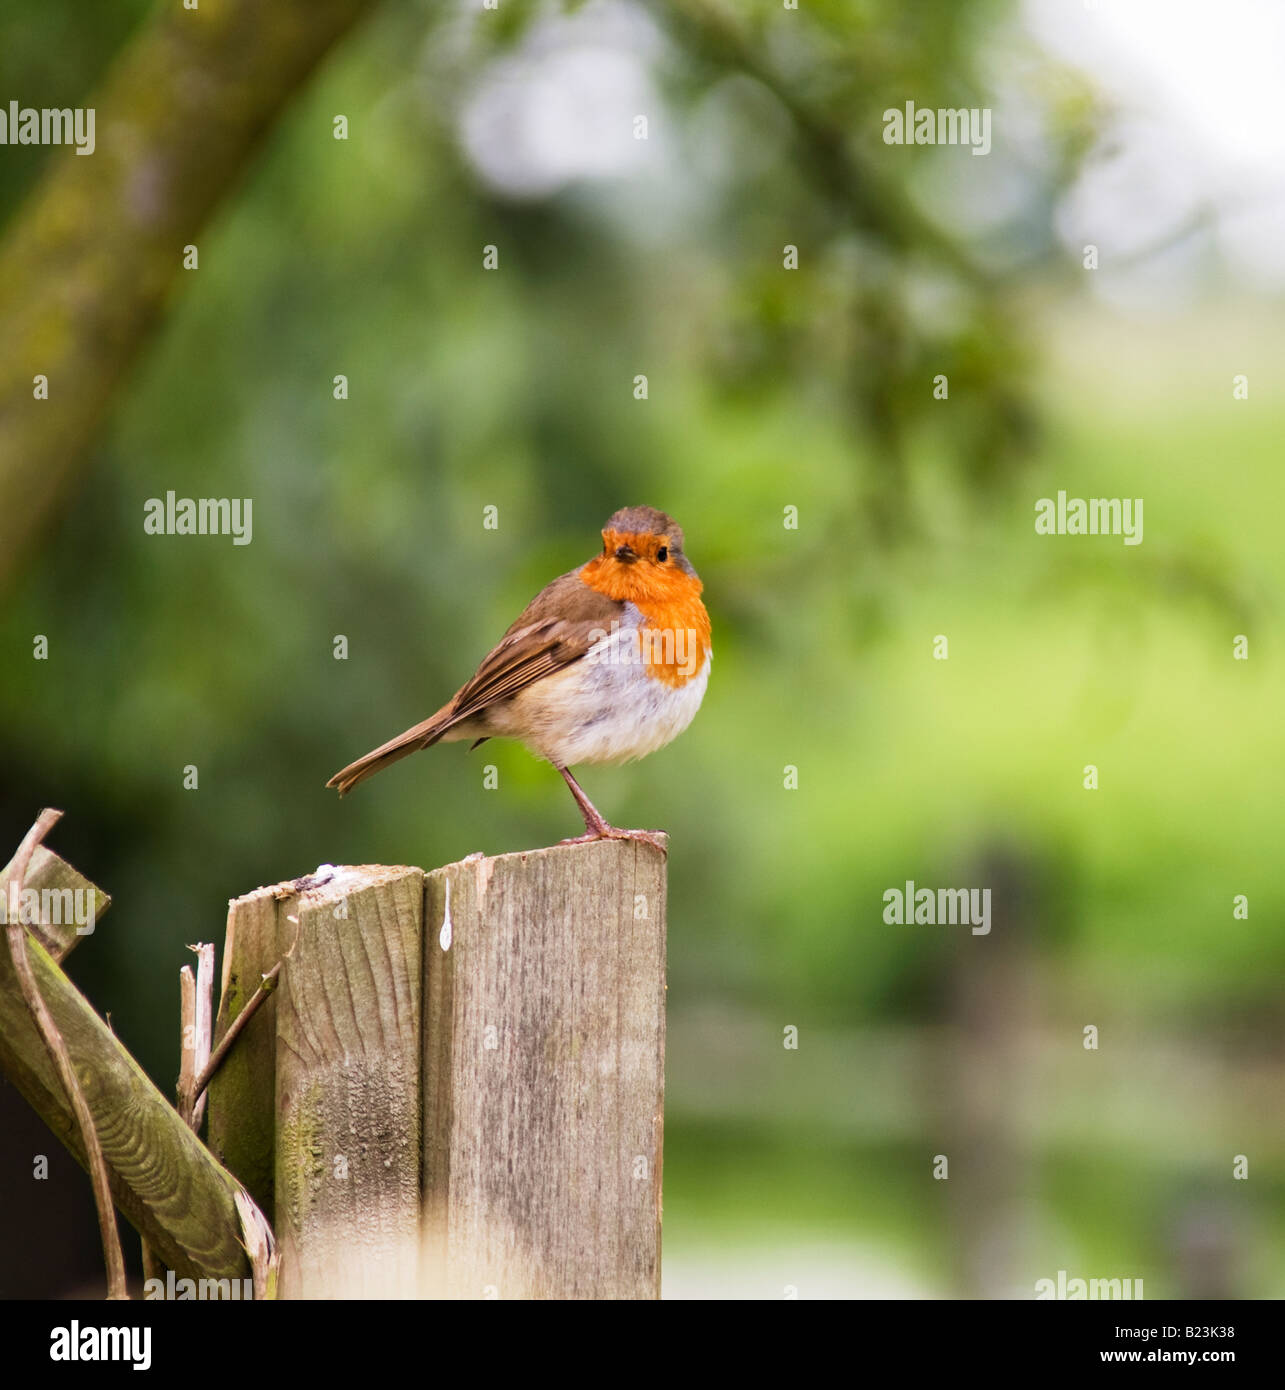 Robin bird sitting on post Stock Photo